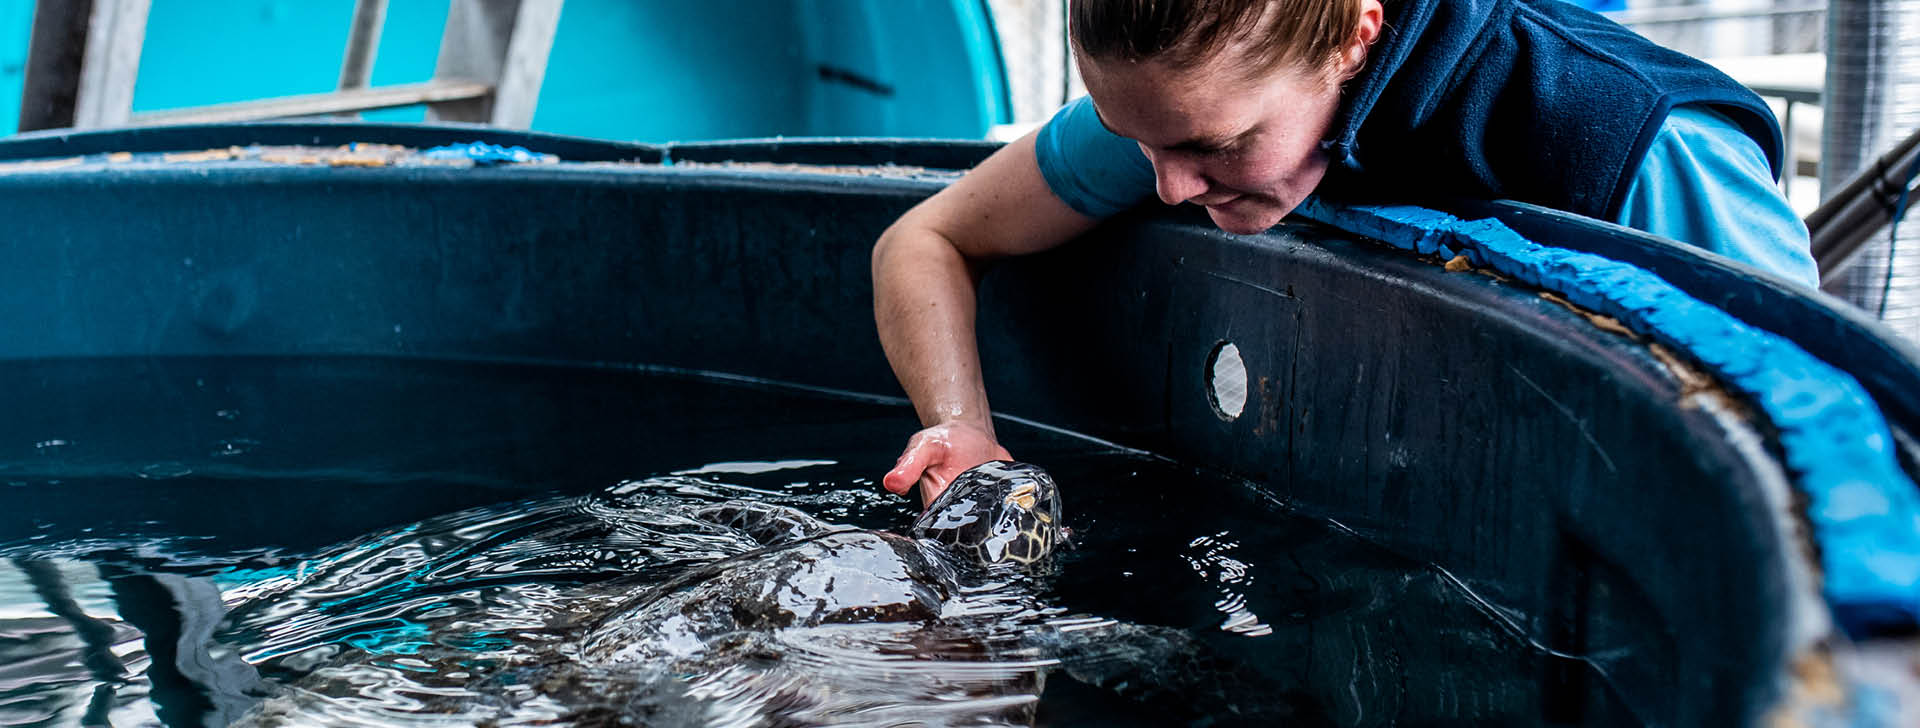 SEA LIFE Sydney staff member feeding turtle